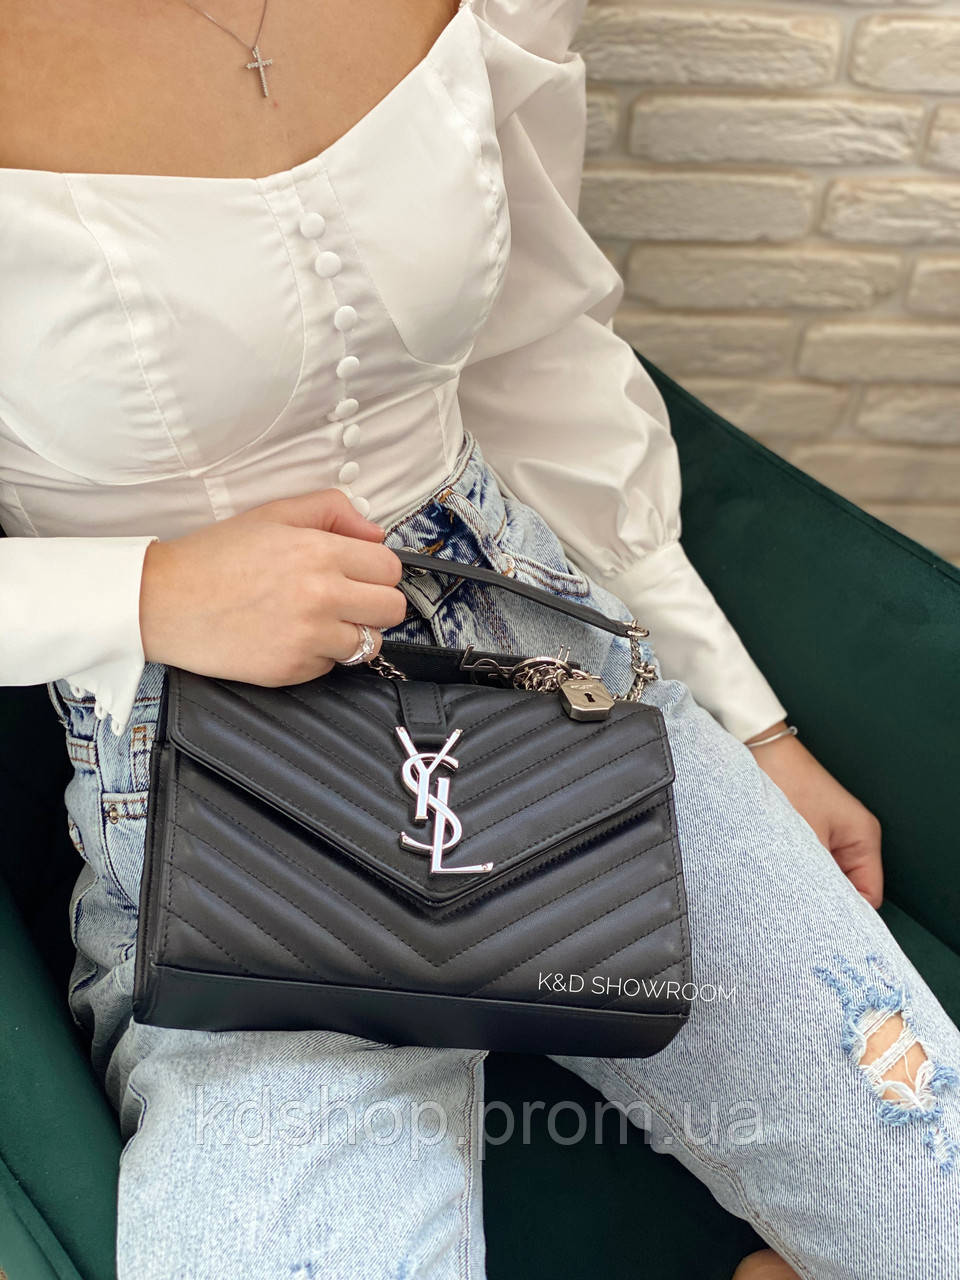 

Женская Сумка Yves Saint Laurent Люкс сумки ysl Клатч Ив Сен Лоран сумка ysl, Черный